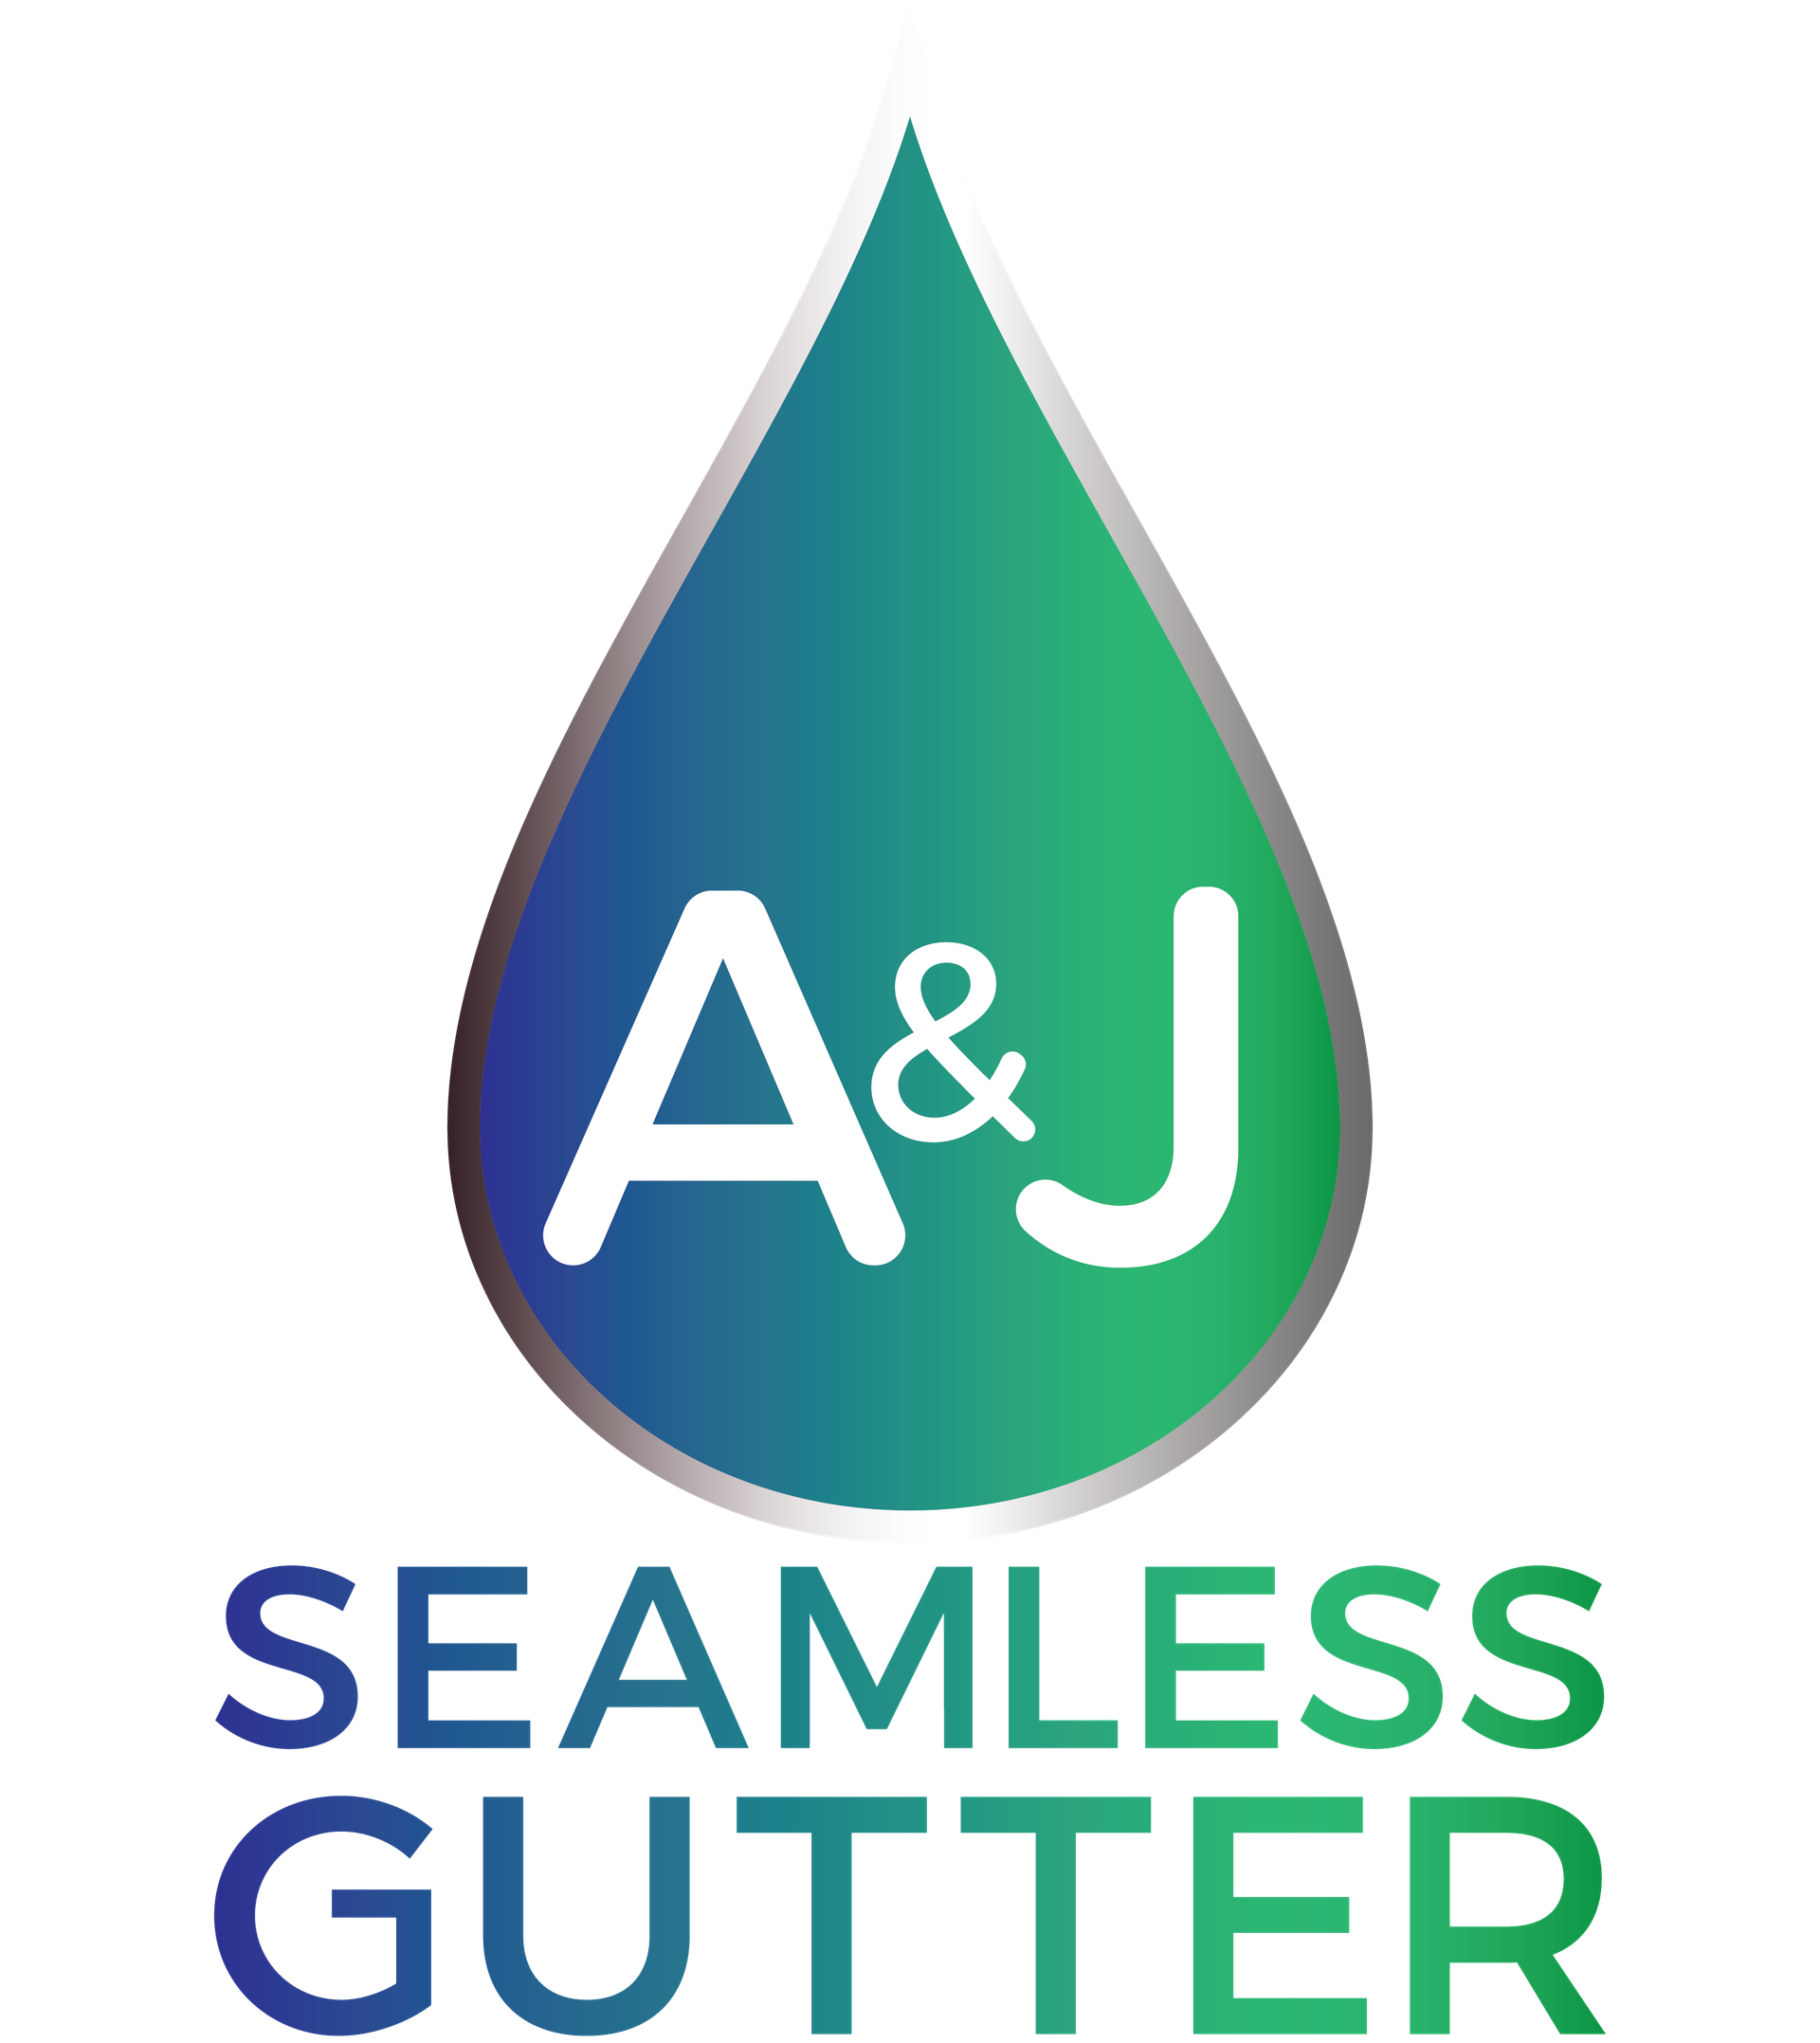 A&J Seamless gutter